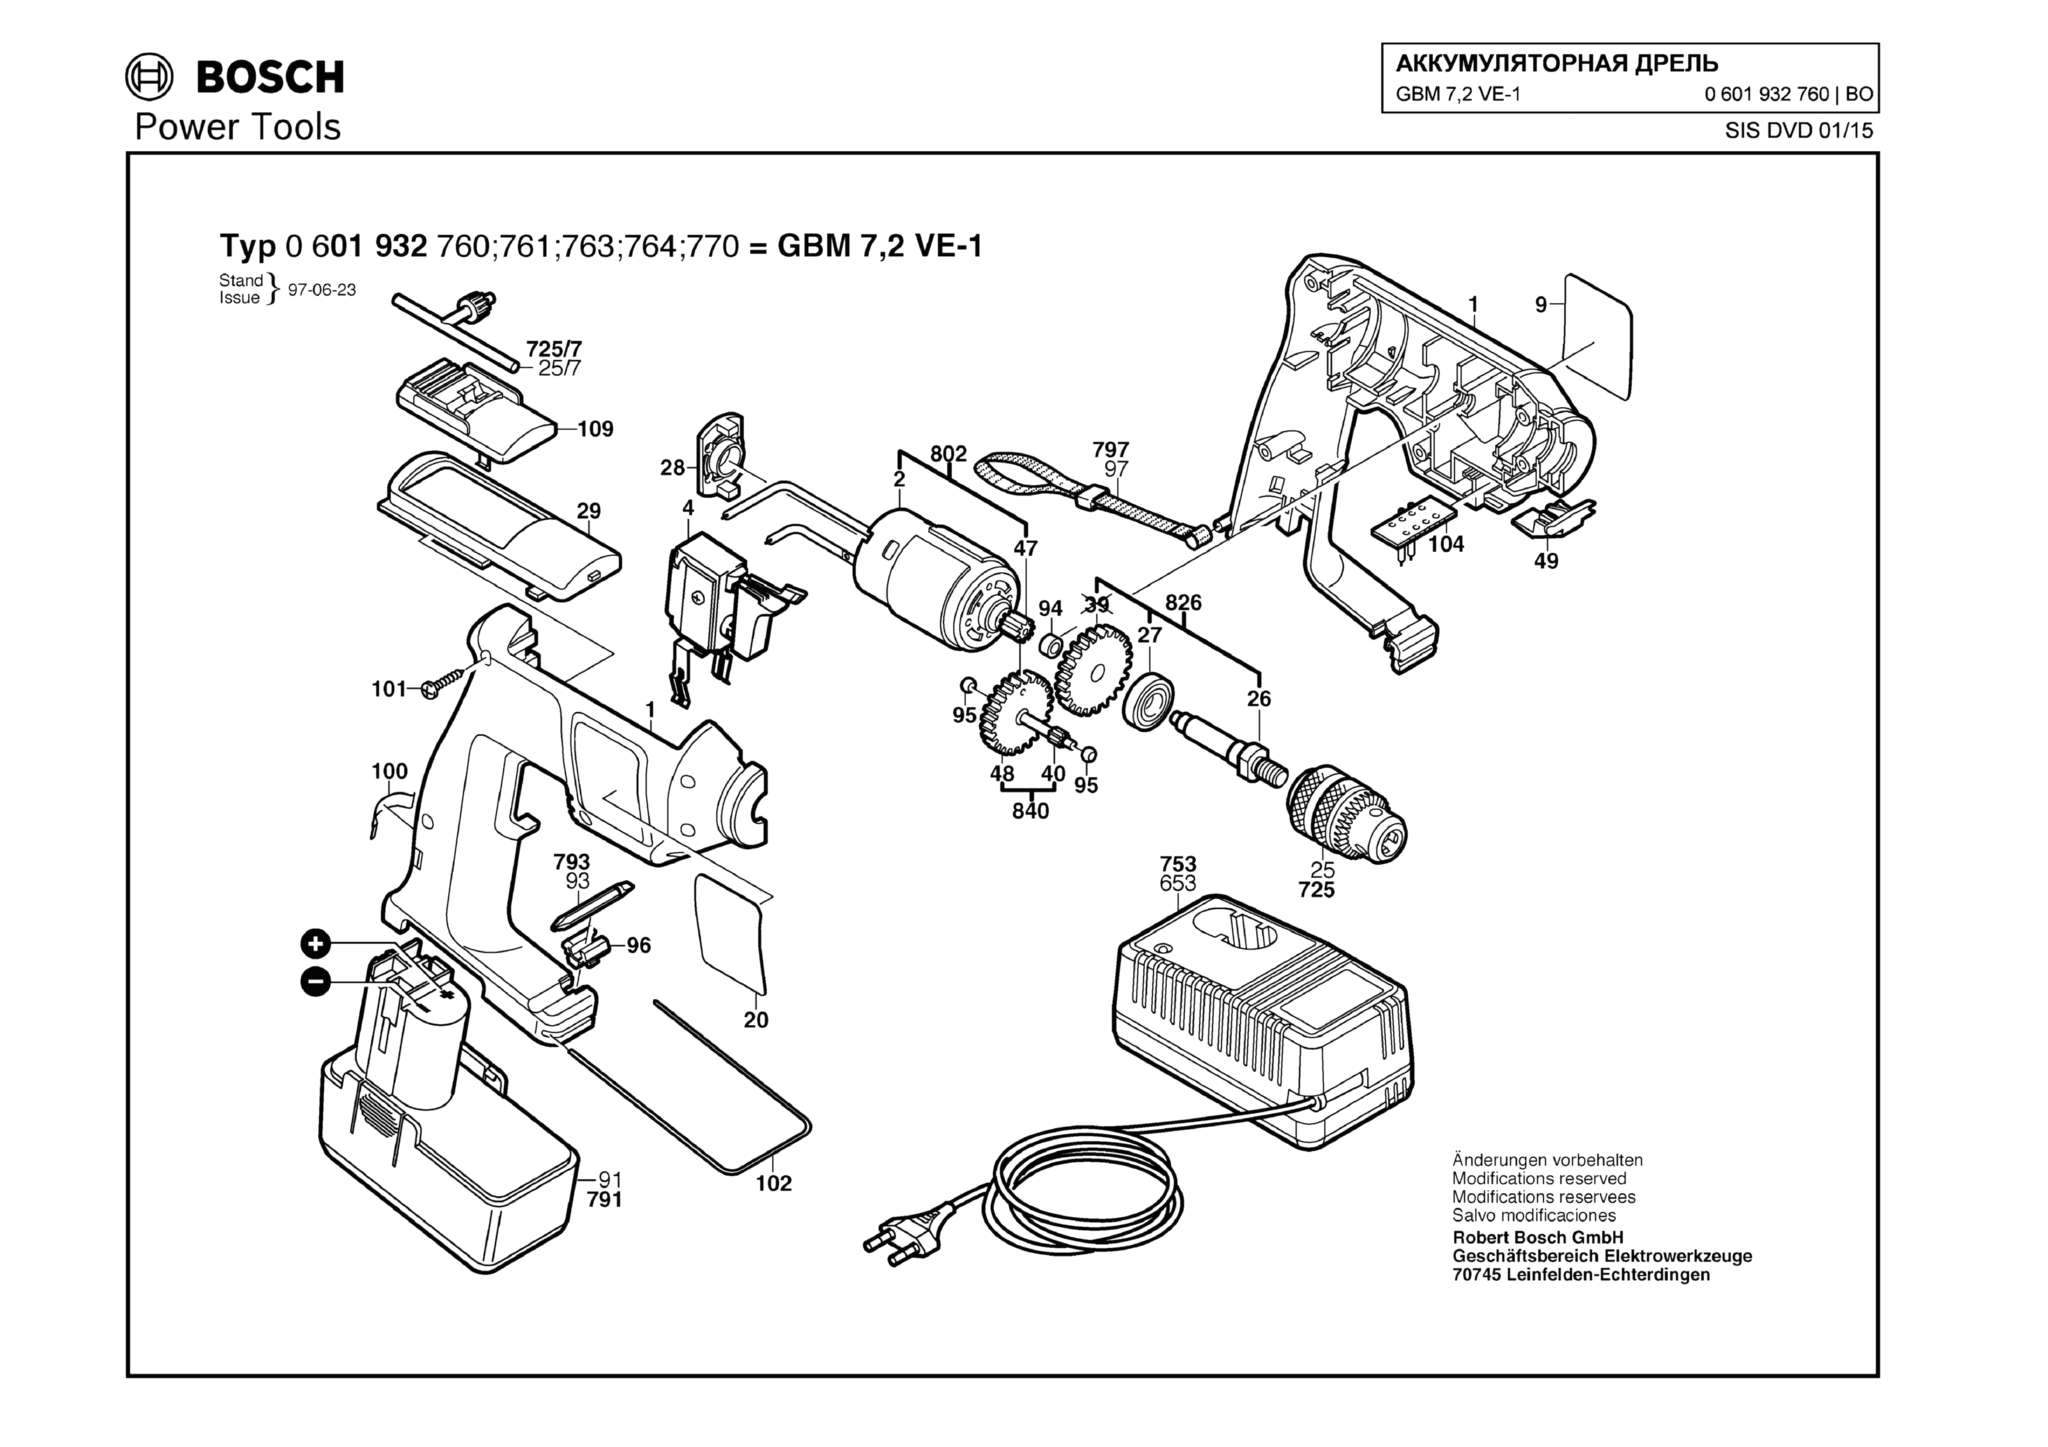 Запчасти, схема и деталировка Bosch GBM 7,2 VE-1 (ТИП 0601932760)